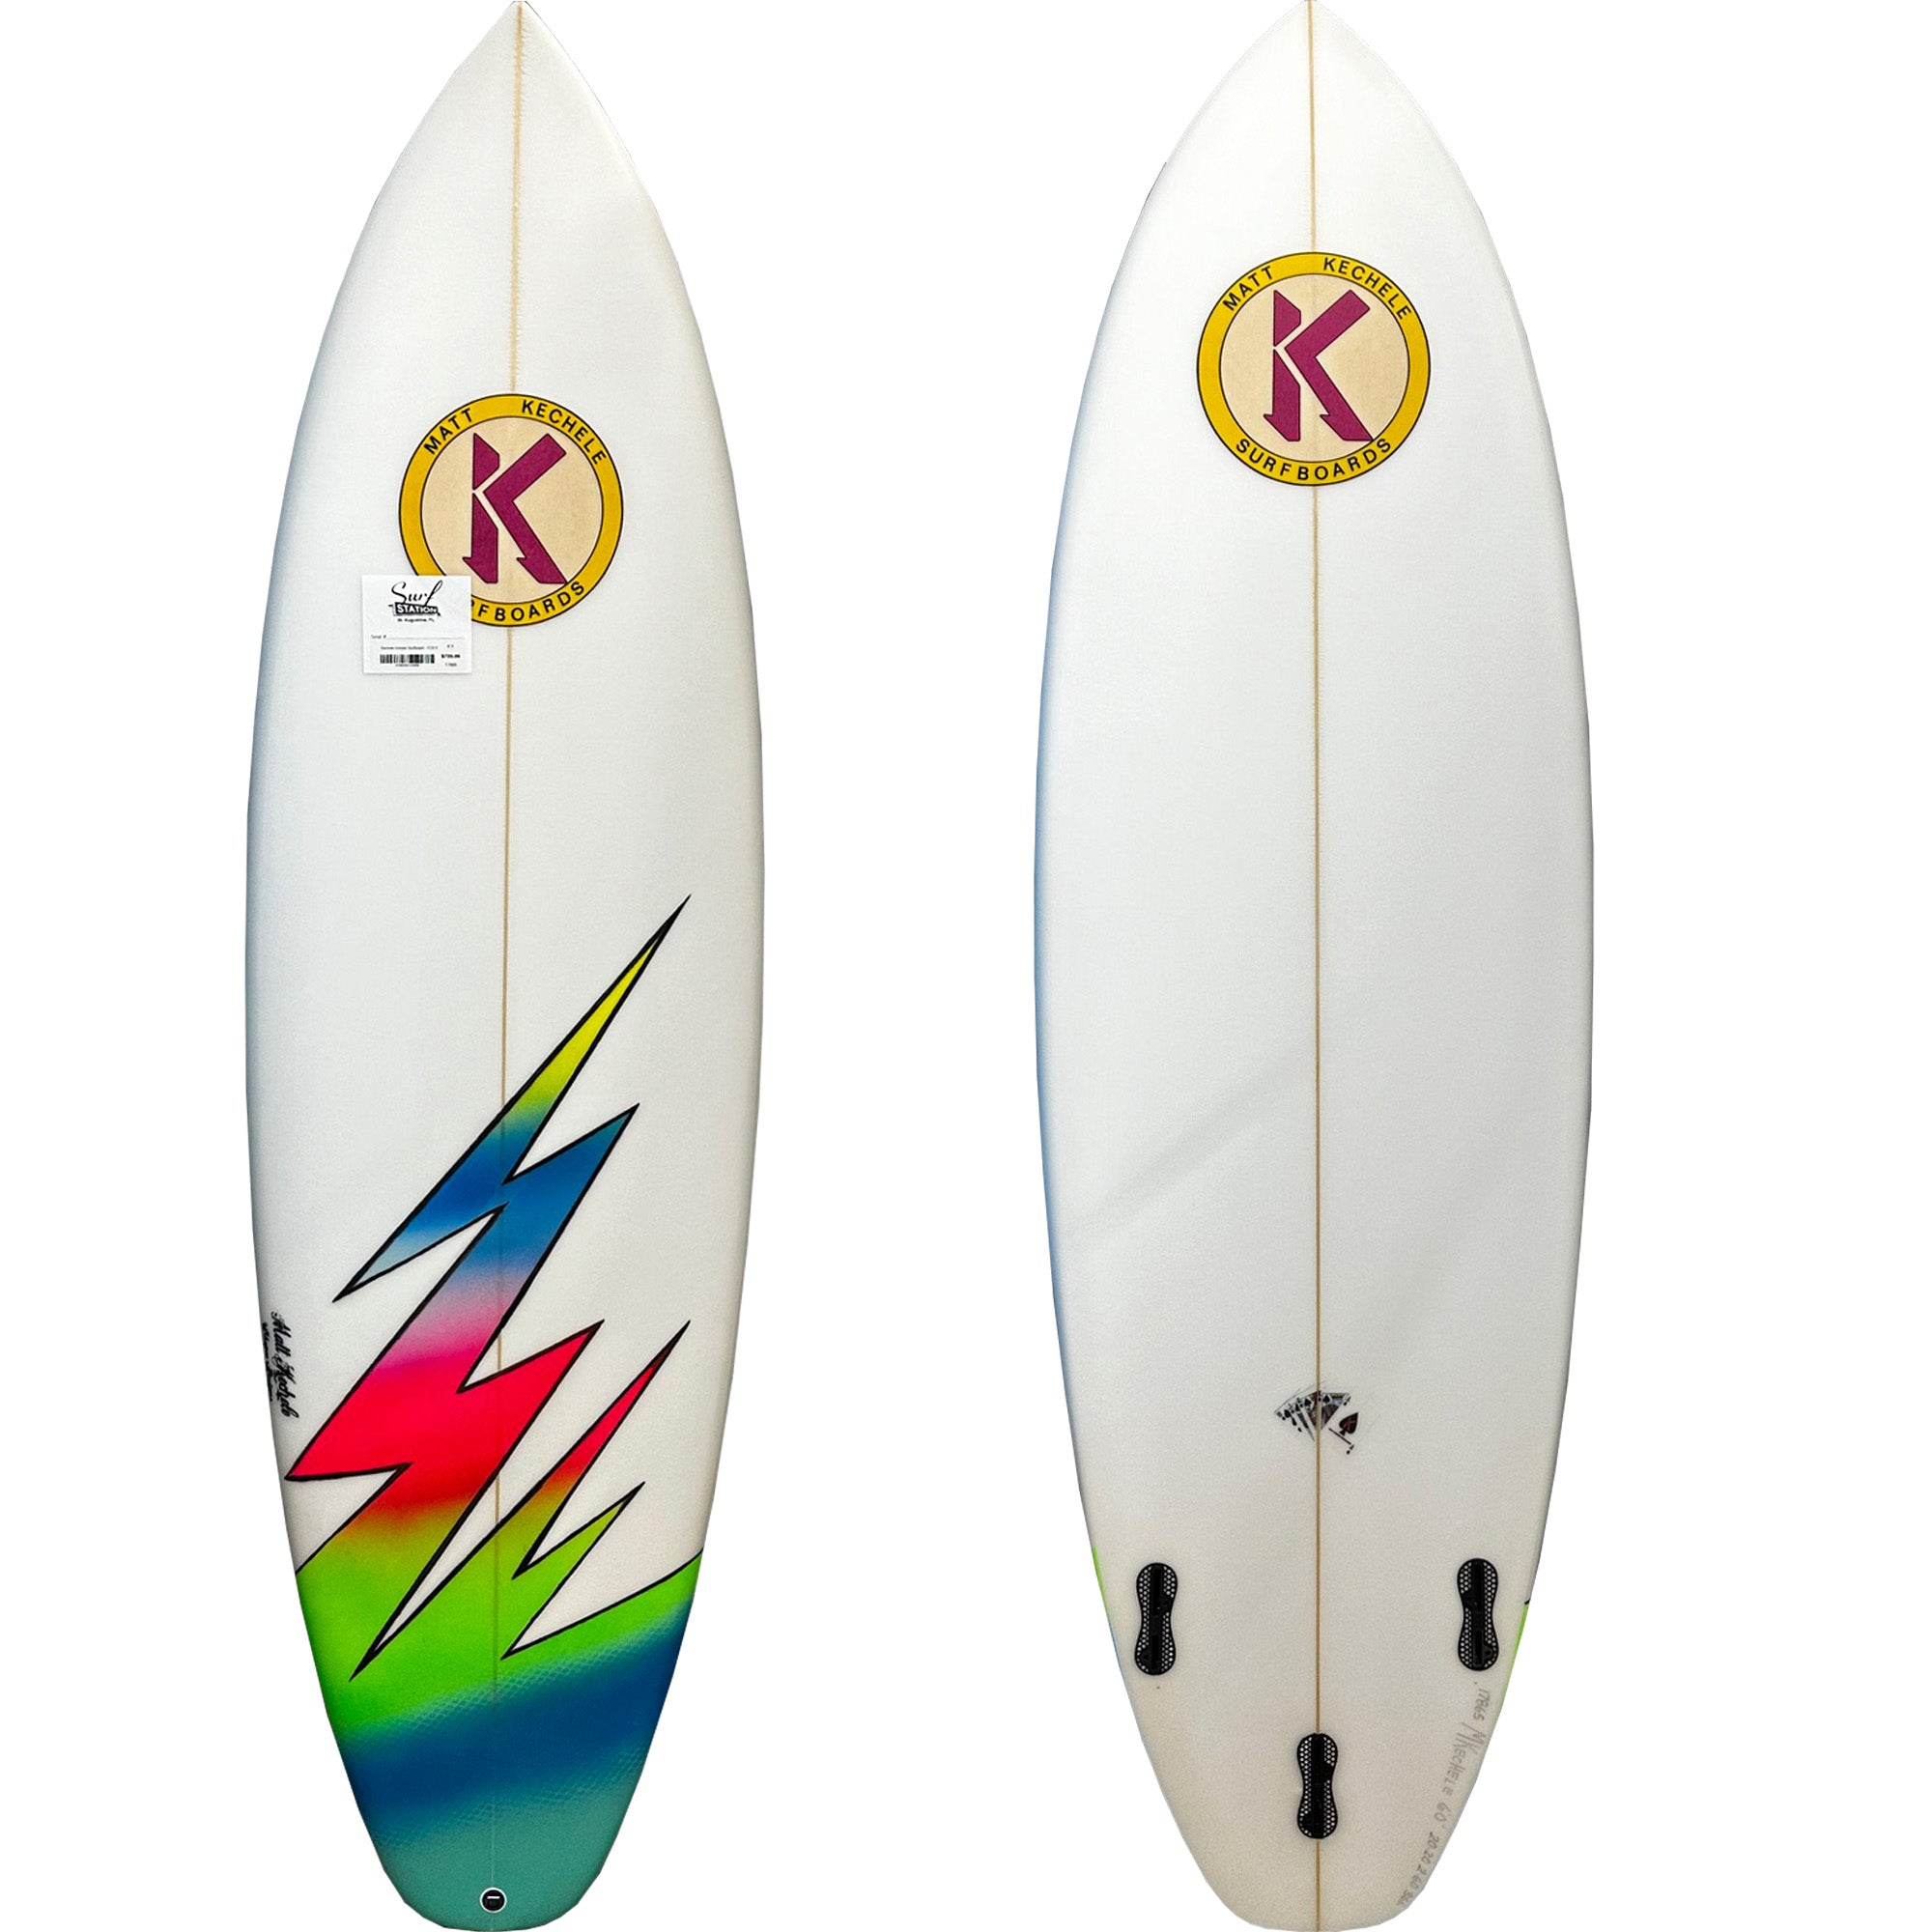 Kechele Grinder Surfboard - FCS II